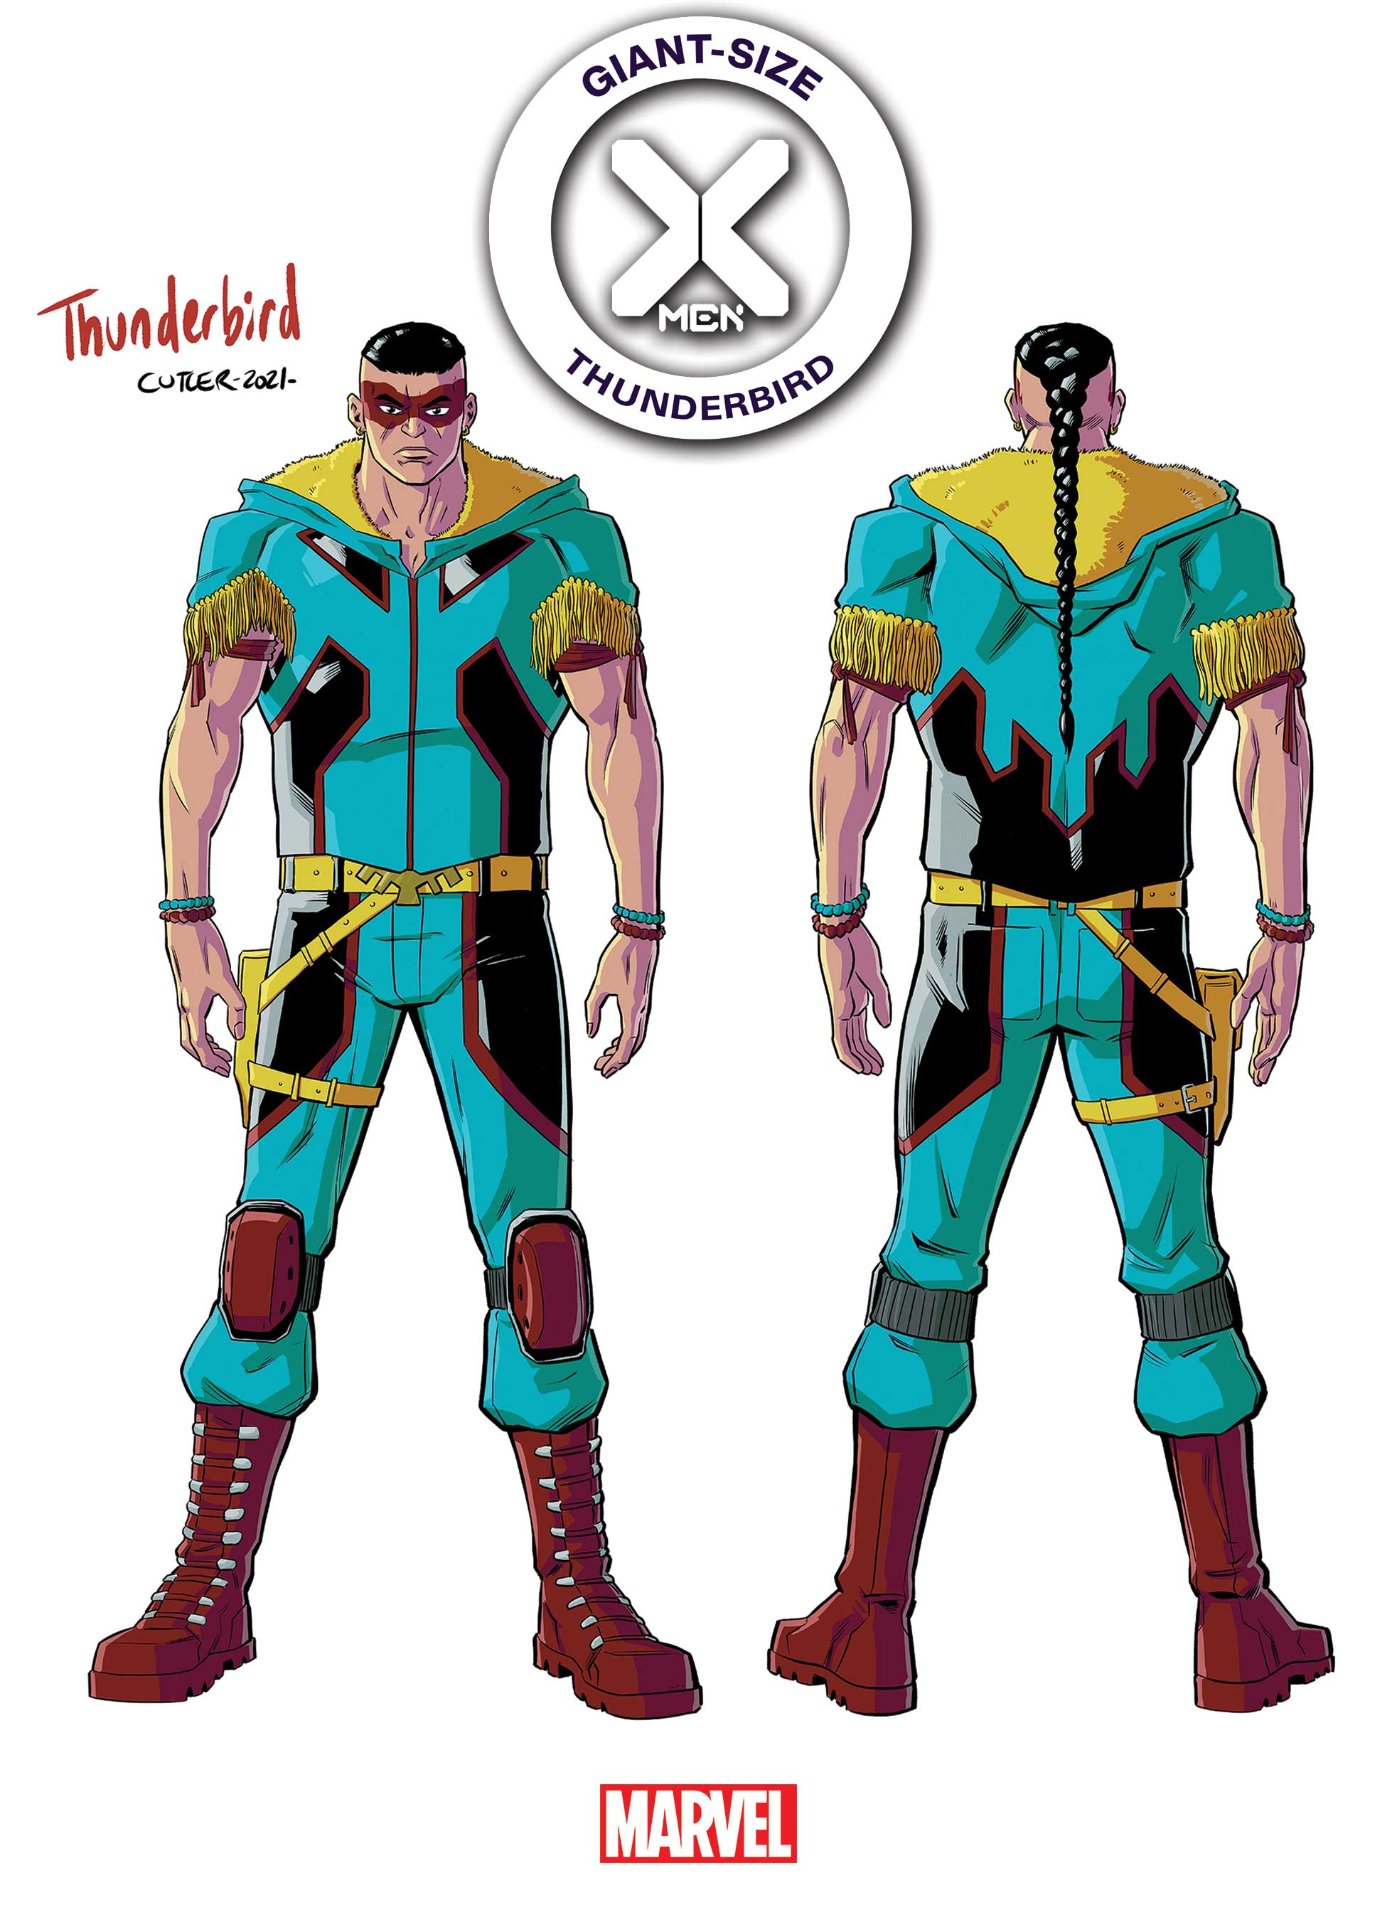 Giant-Size X-Men: Thunderbird #1 Designvariante Cover von David Cutler